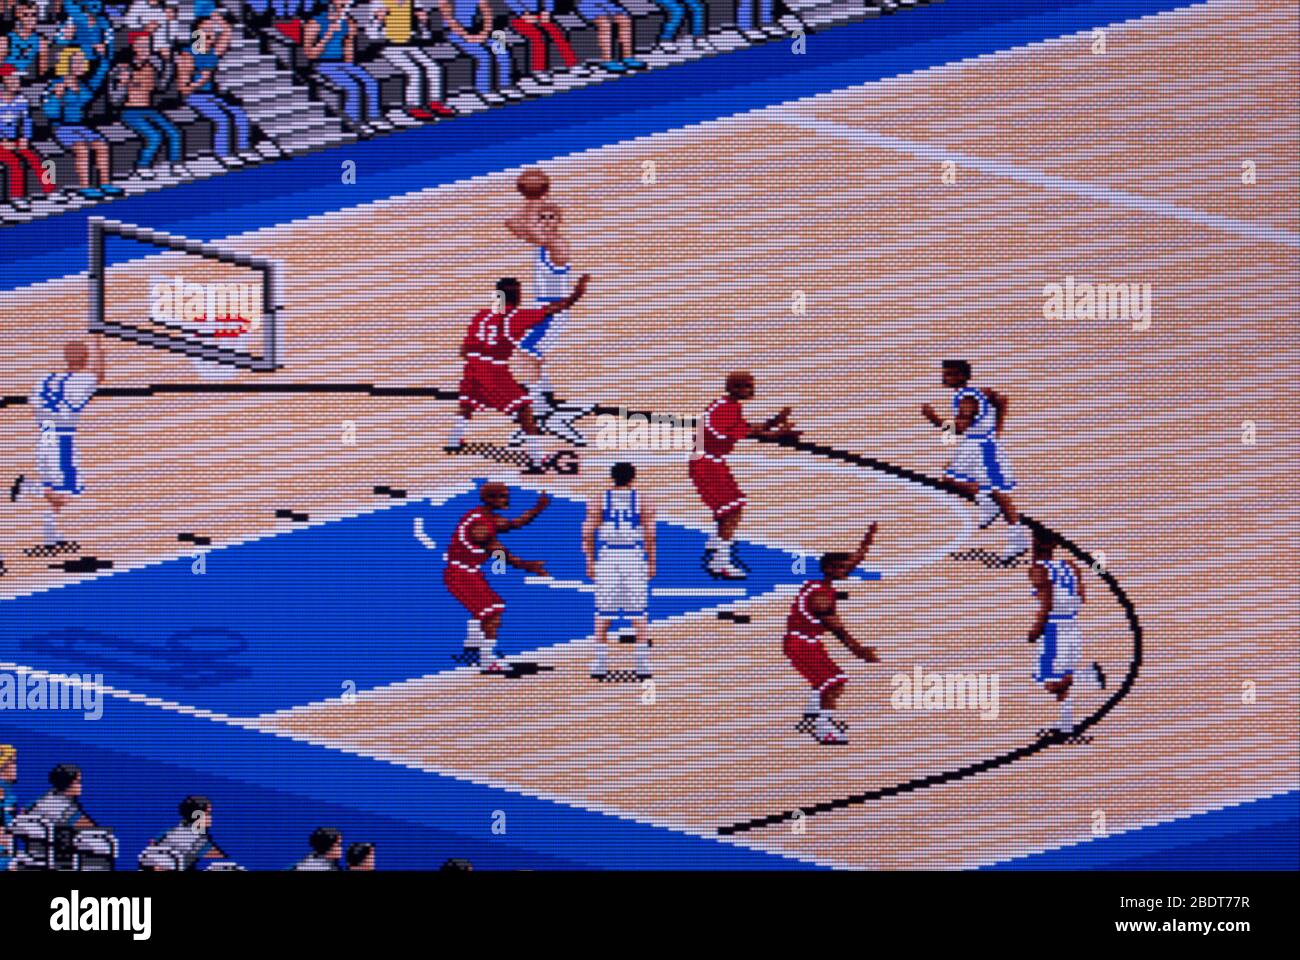 Entraîneur K College Basketball - Sega Genesis Mega Drive - usage éditorial seulement Banque D'Images